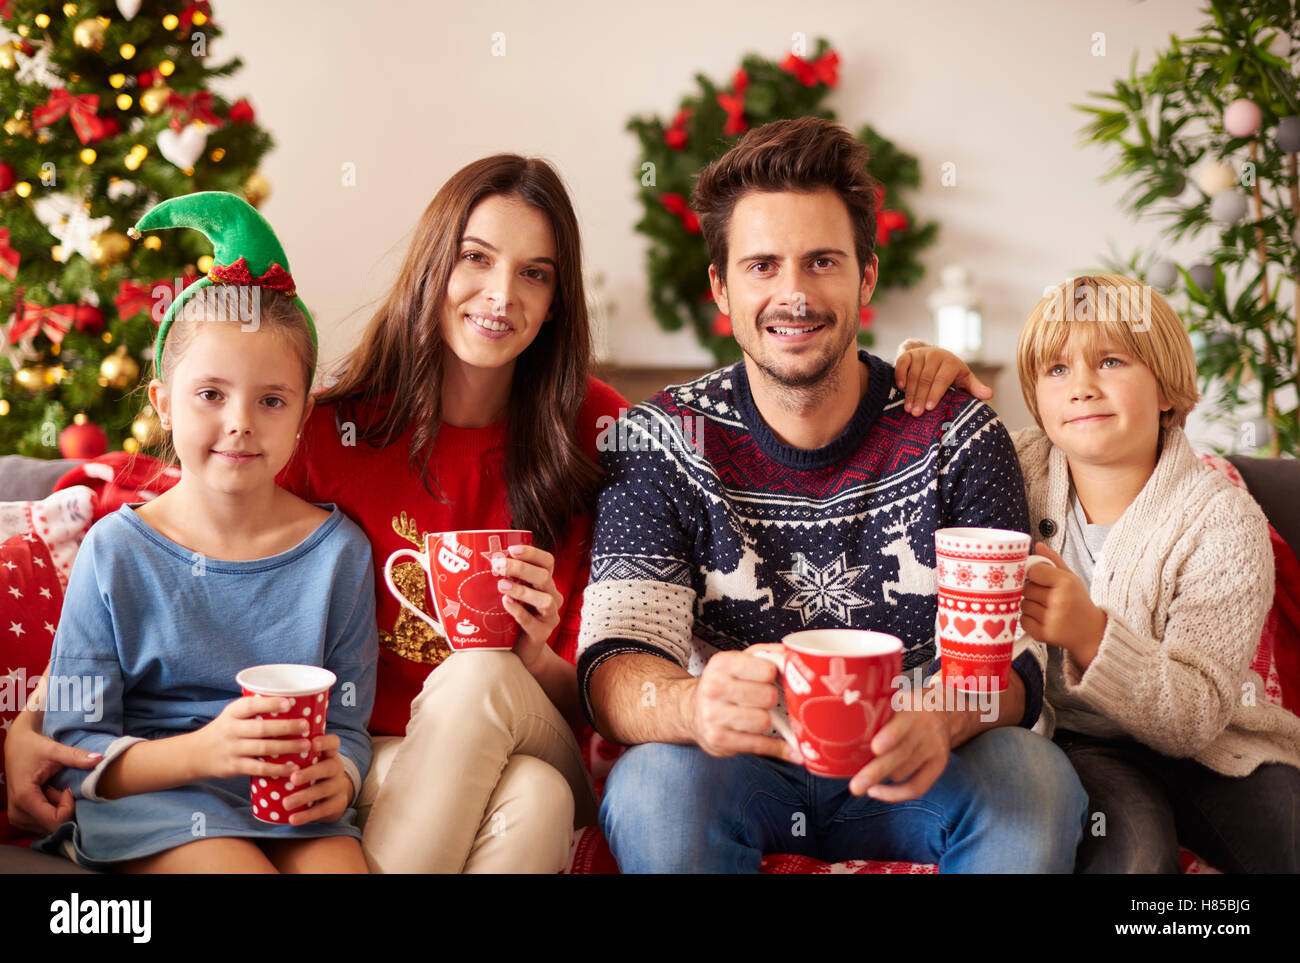 Familia bebiendo chocolate caliente en Navidad Foto de stock